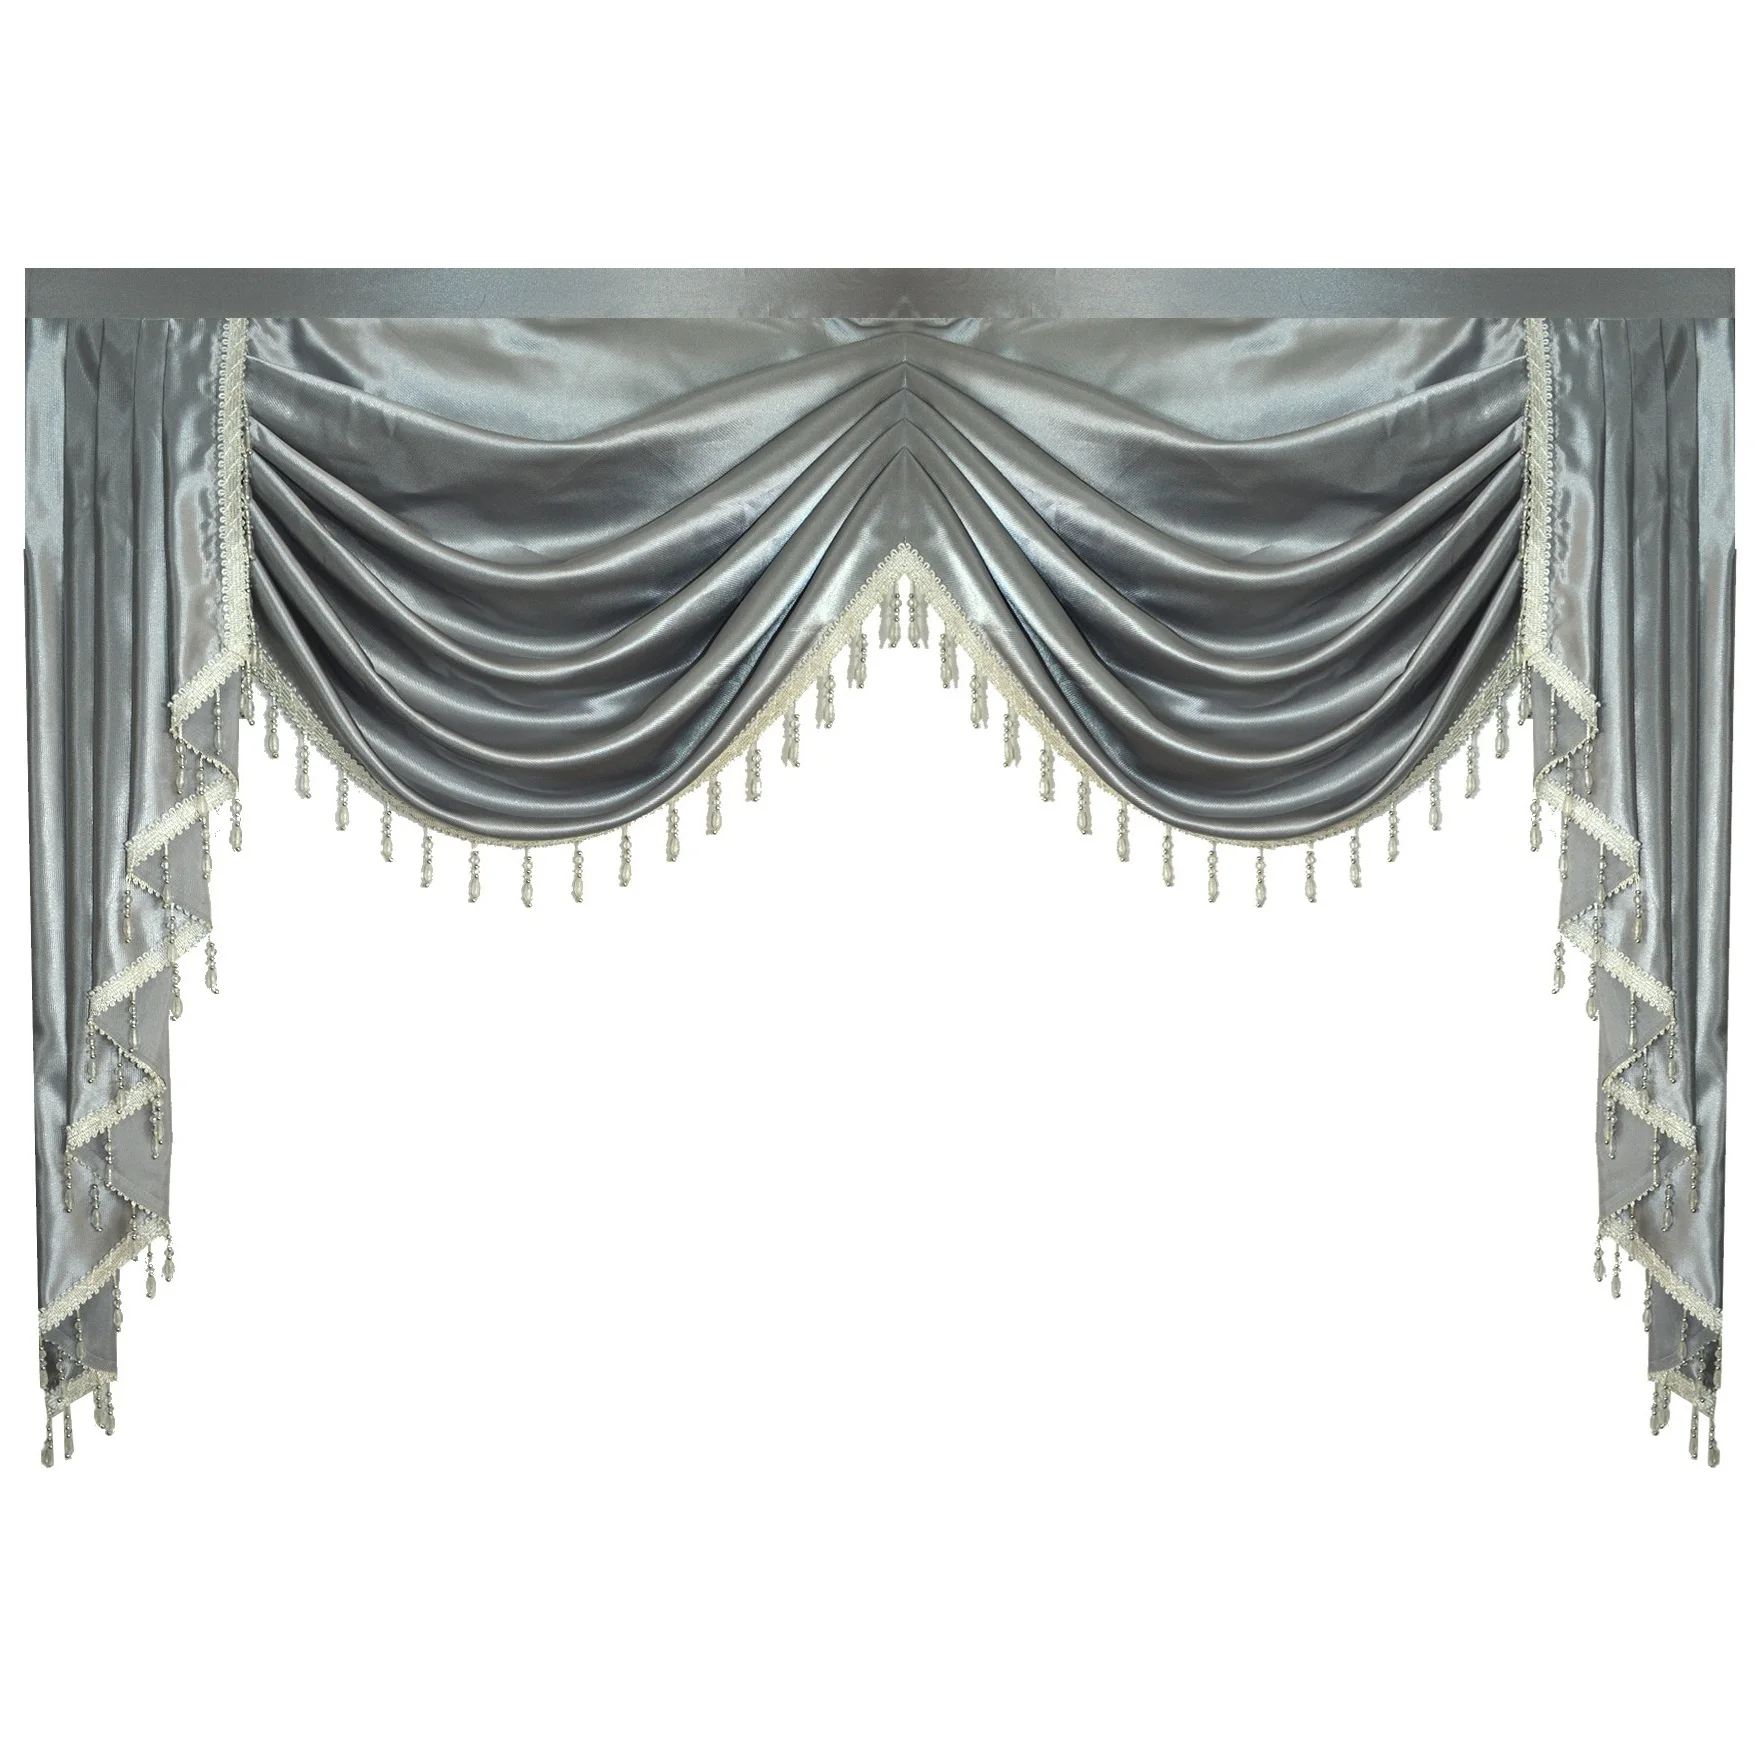 Valance чистый серый роскошные шторы для гостиной окна Swag шторы для спальни для кухни